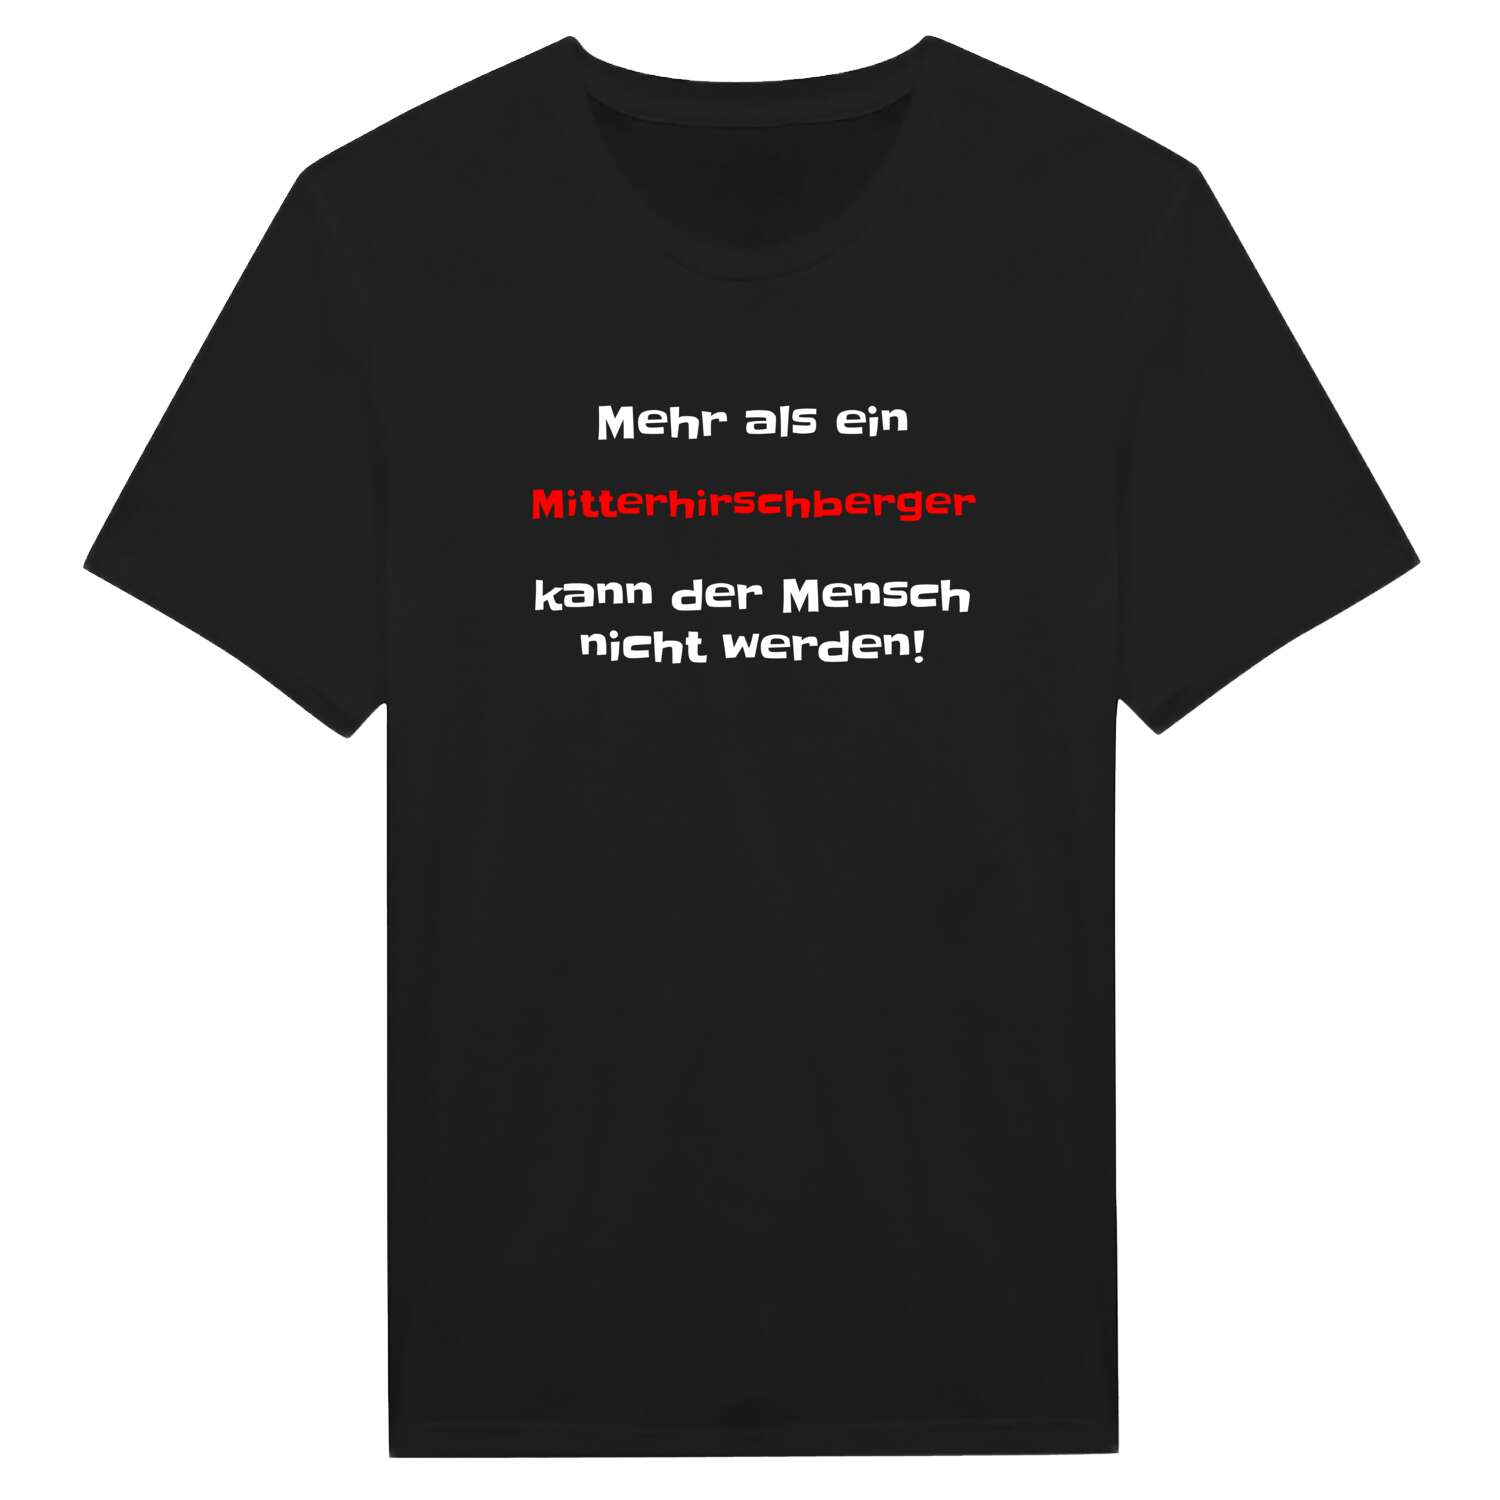 Mitterhirschberg T-Shirt »Mehr als ein«